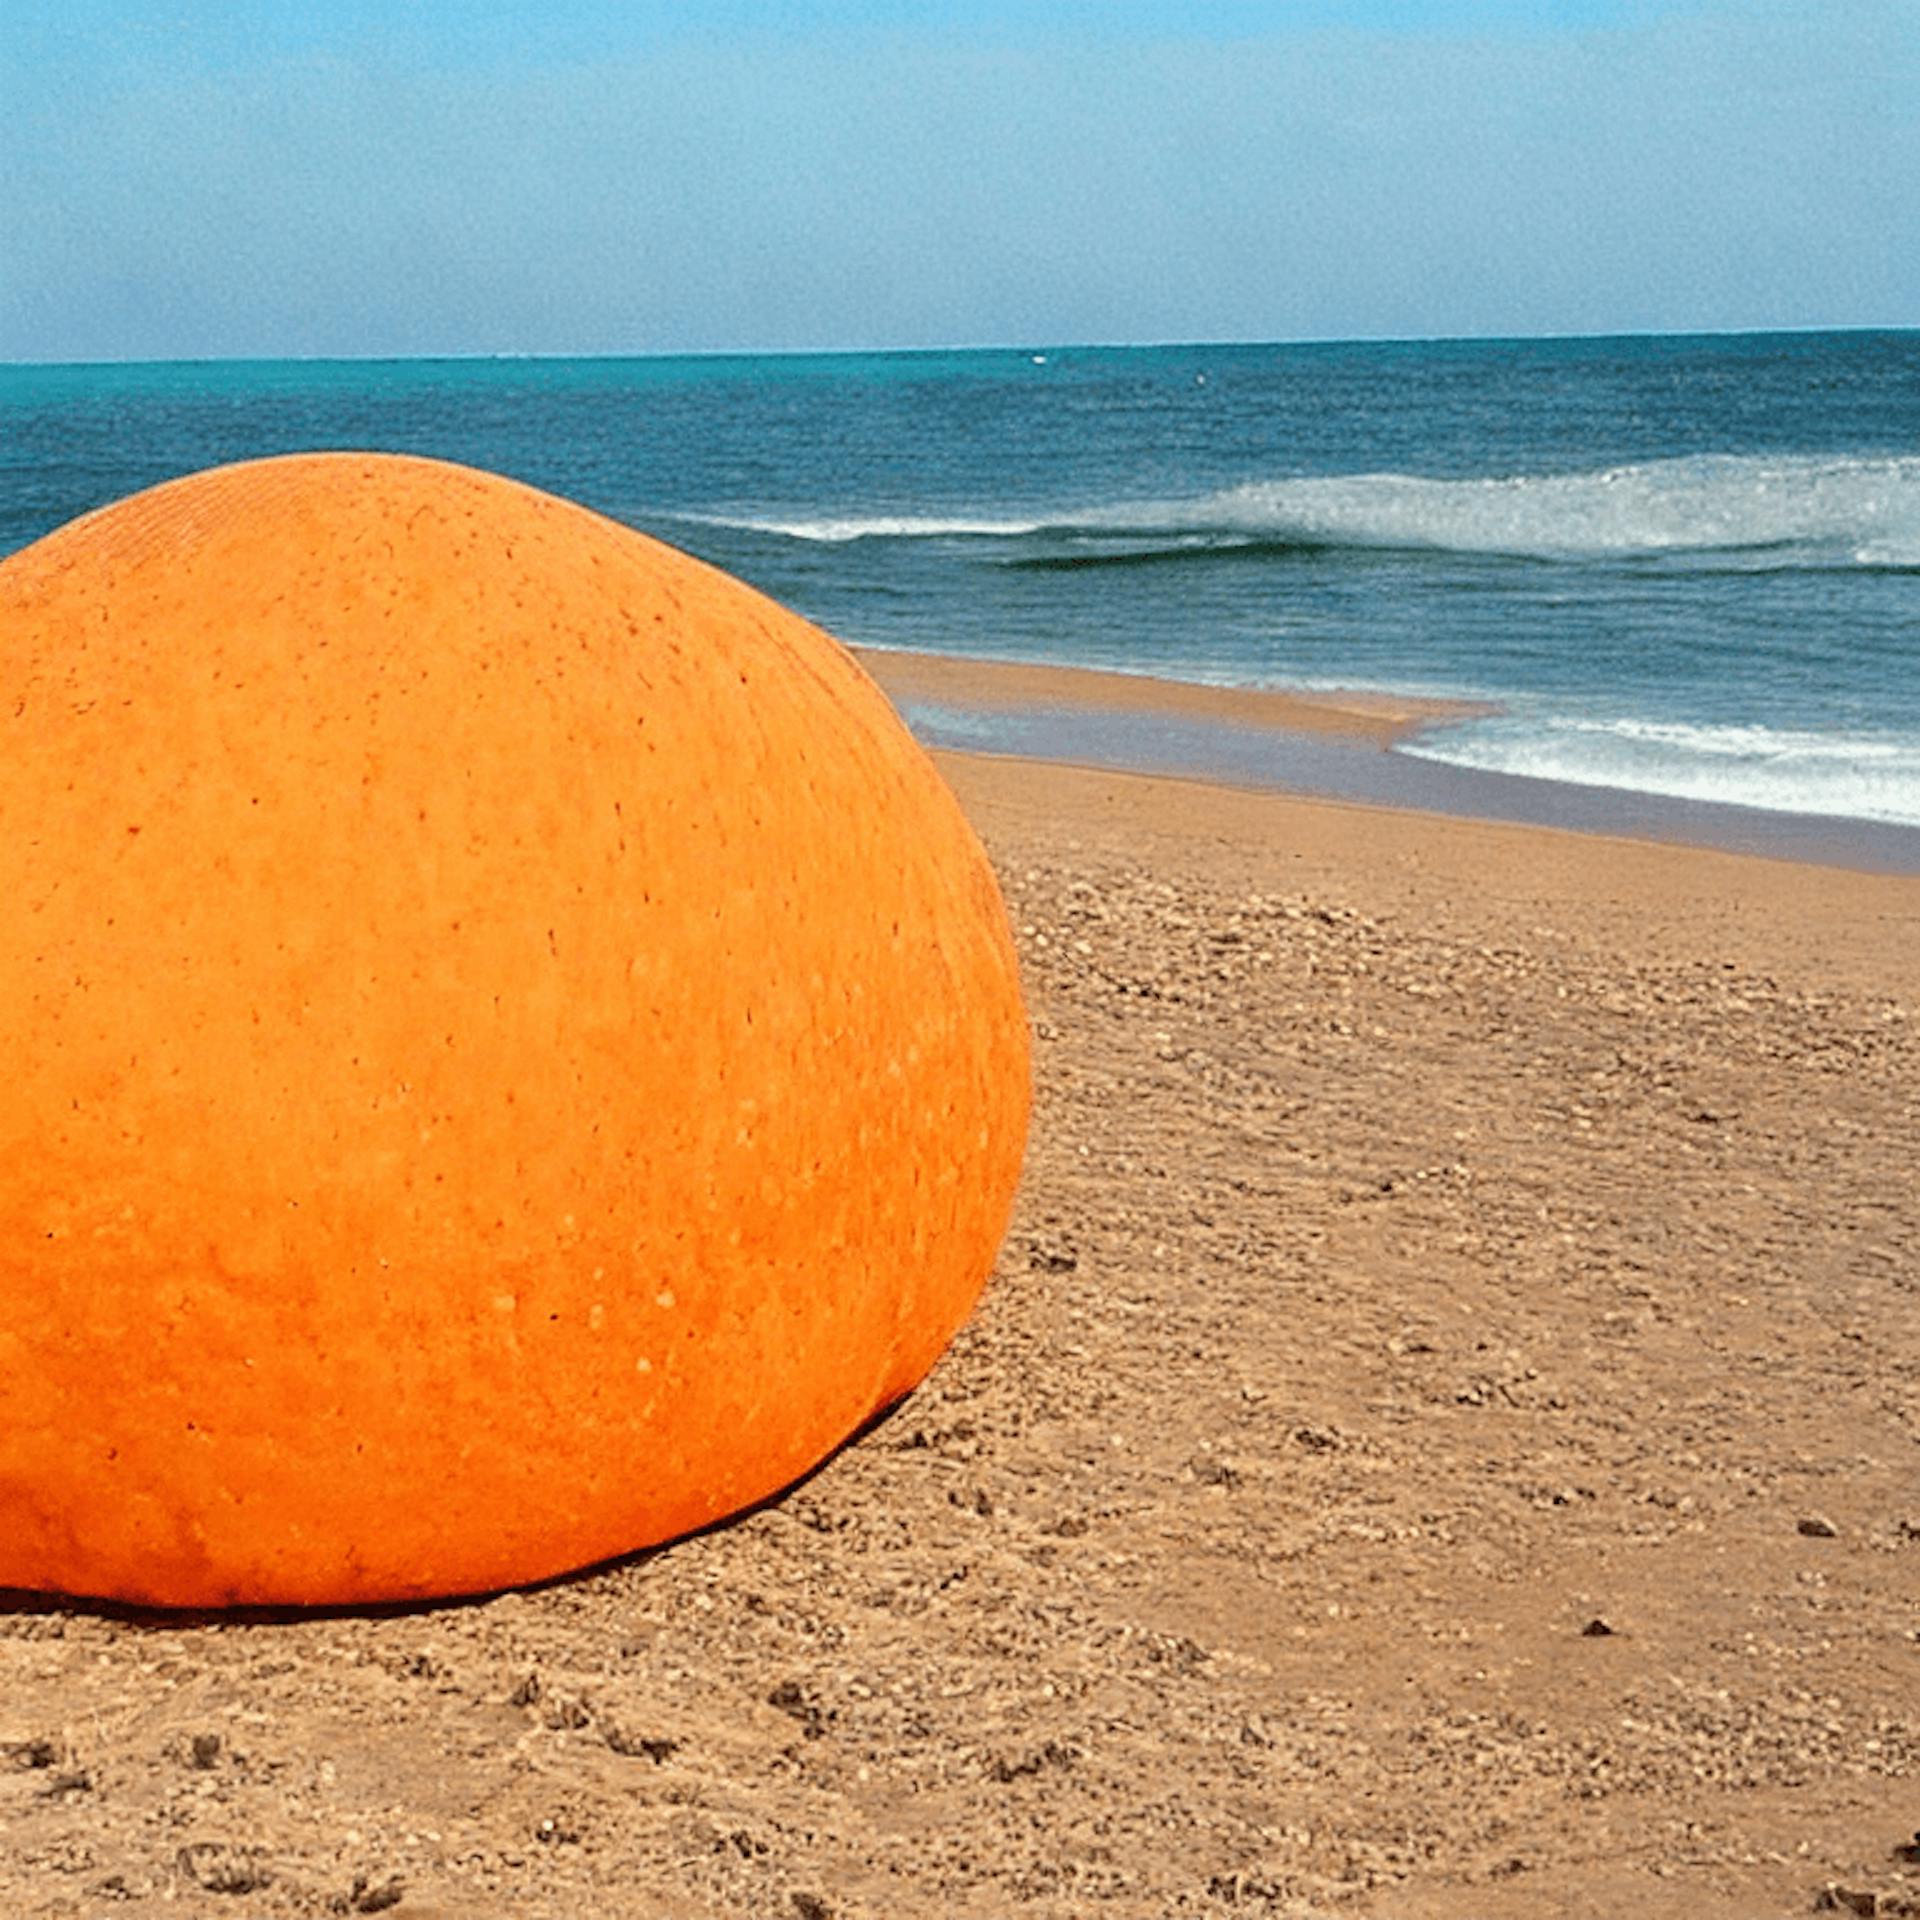 Cantaloup géant à la plage